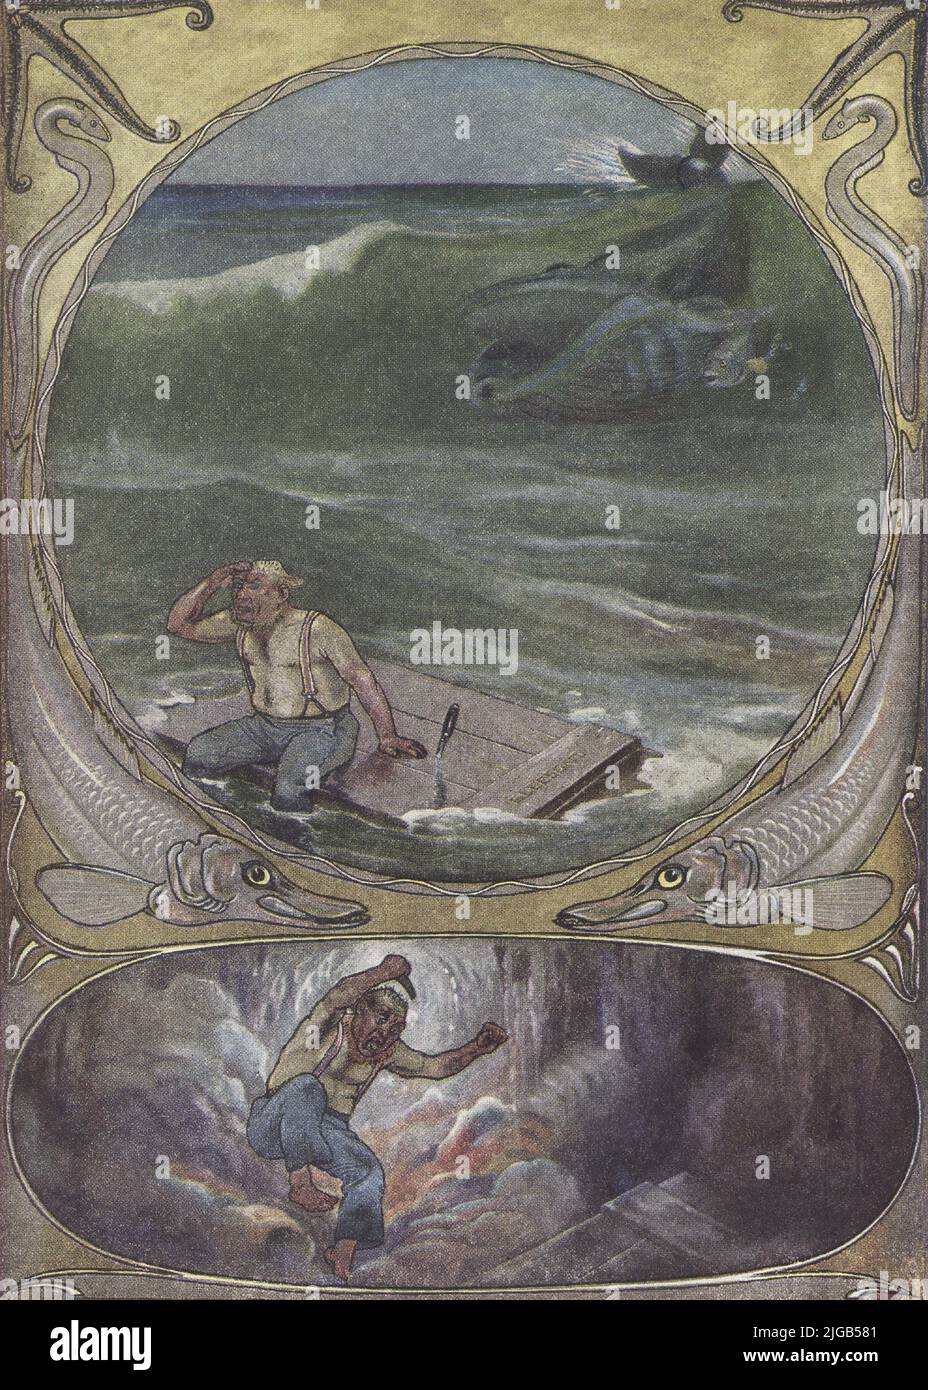 Esta imagen de 1912 de J M Gleeson ilustra la obra de Kipling How whale got its throat. Érase una vez la ballena comió pescados de todo tipo y tamaños. Por fin sólo quedaba uno en el mar, un pequeño pez astuto que se escondió detrás de la oreja de la ballena y le aconsejó comer un marinero naufragado, que se encuentra en la Latitud 50 Norte y la Longitud 40 Oeste. La Ballena tragó al marinero y la balsa en la que estaba sentado. Pero una vez dentro, el marinero saltó tanto que la Ballena tuvo hipo y le pidió que saliera. Él respondió que no lo haría, a menos que fuera llevado a la orilla de su casa británica, y dan Foto de stock